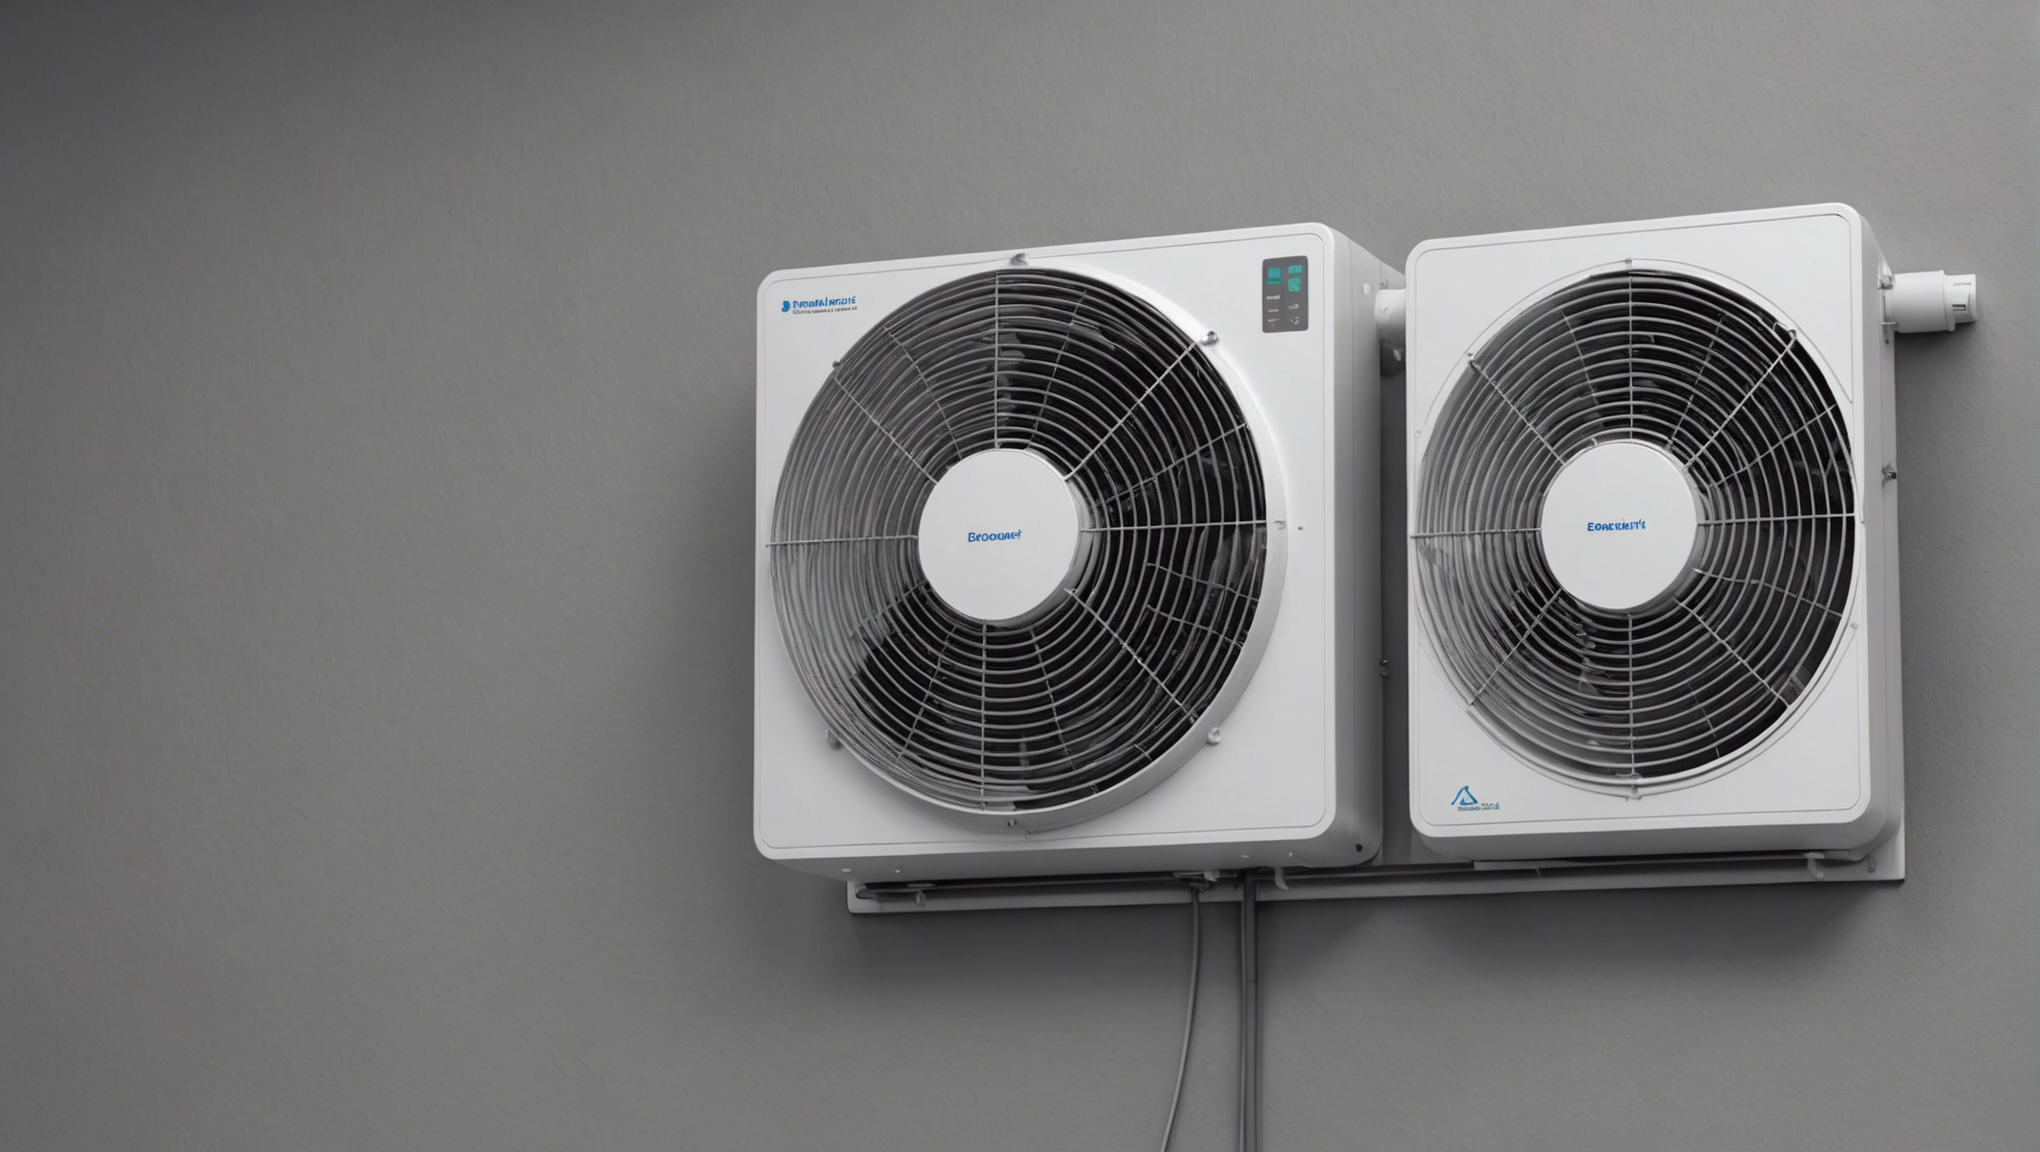 découvrez l'importance vitale d'une ventilation adéquate pour la santé et le bien-être, ainsi que pour la qualité de l'air intérieur. informez-vous sur les meilleures pratiques et solutions pour une ventilation efficace.